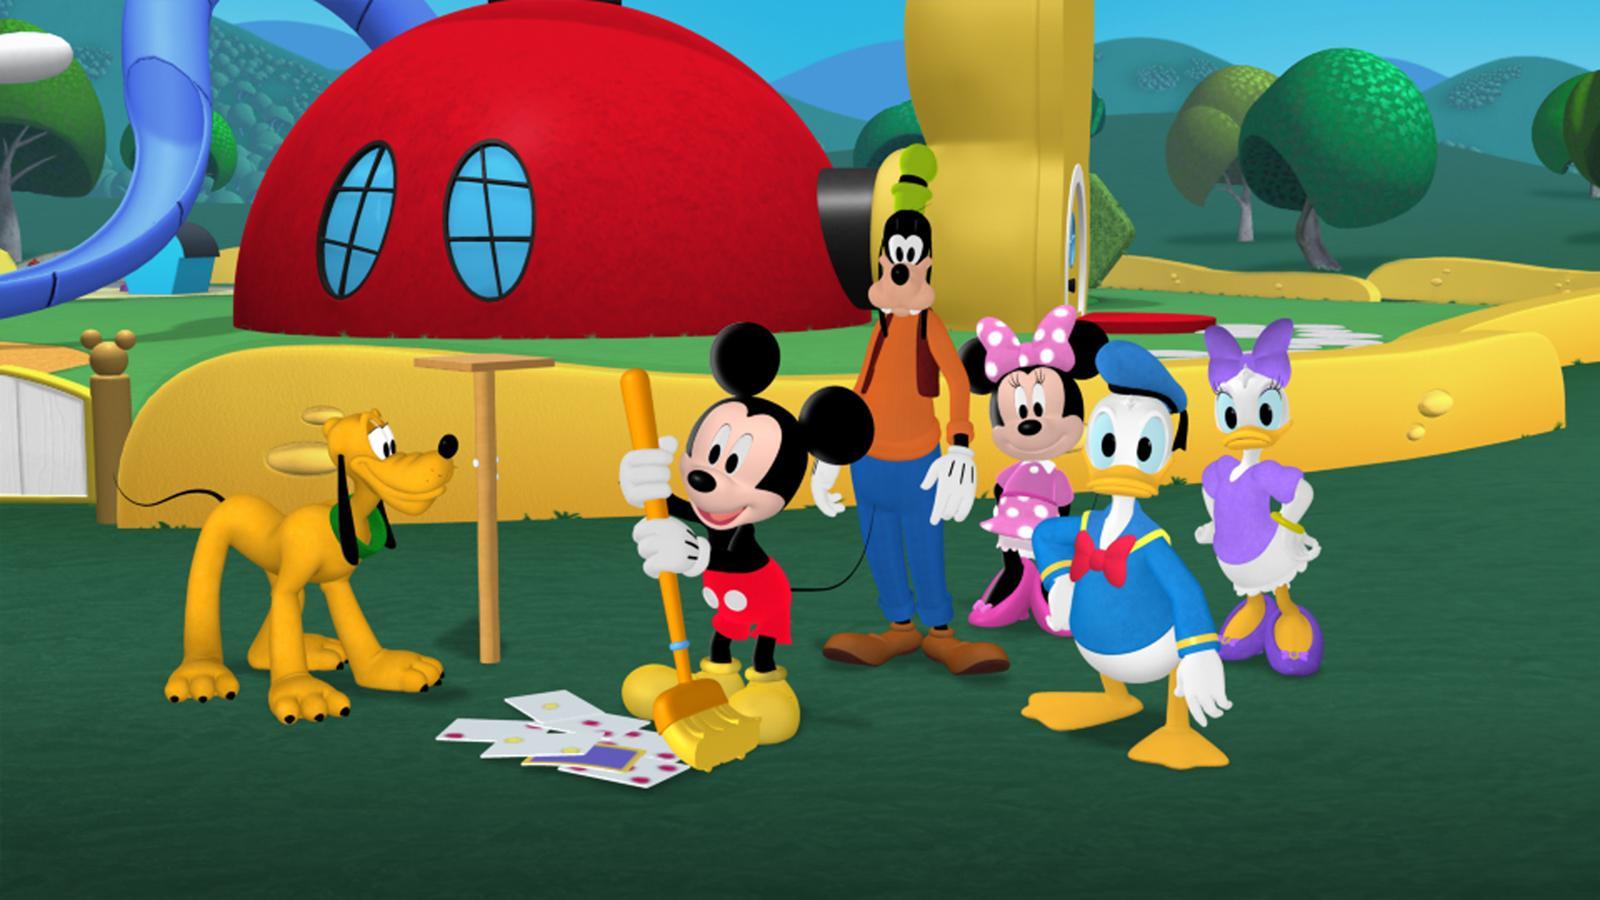 Qué ocurre con la familia de Mickey Mouse últimamente? Vídeos de juguetes  de peluche para niños. 